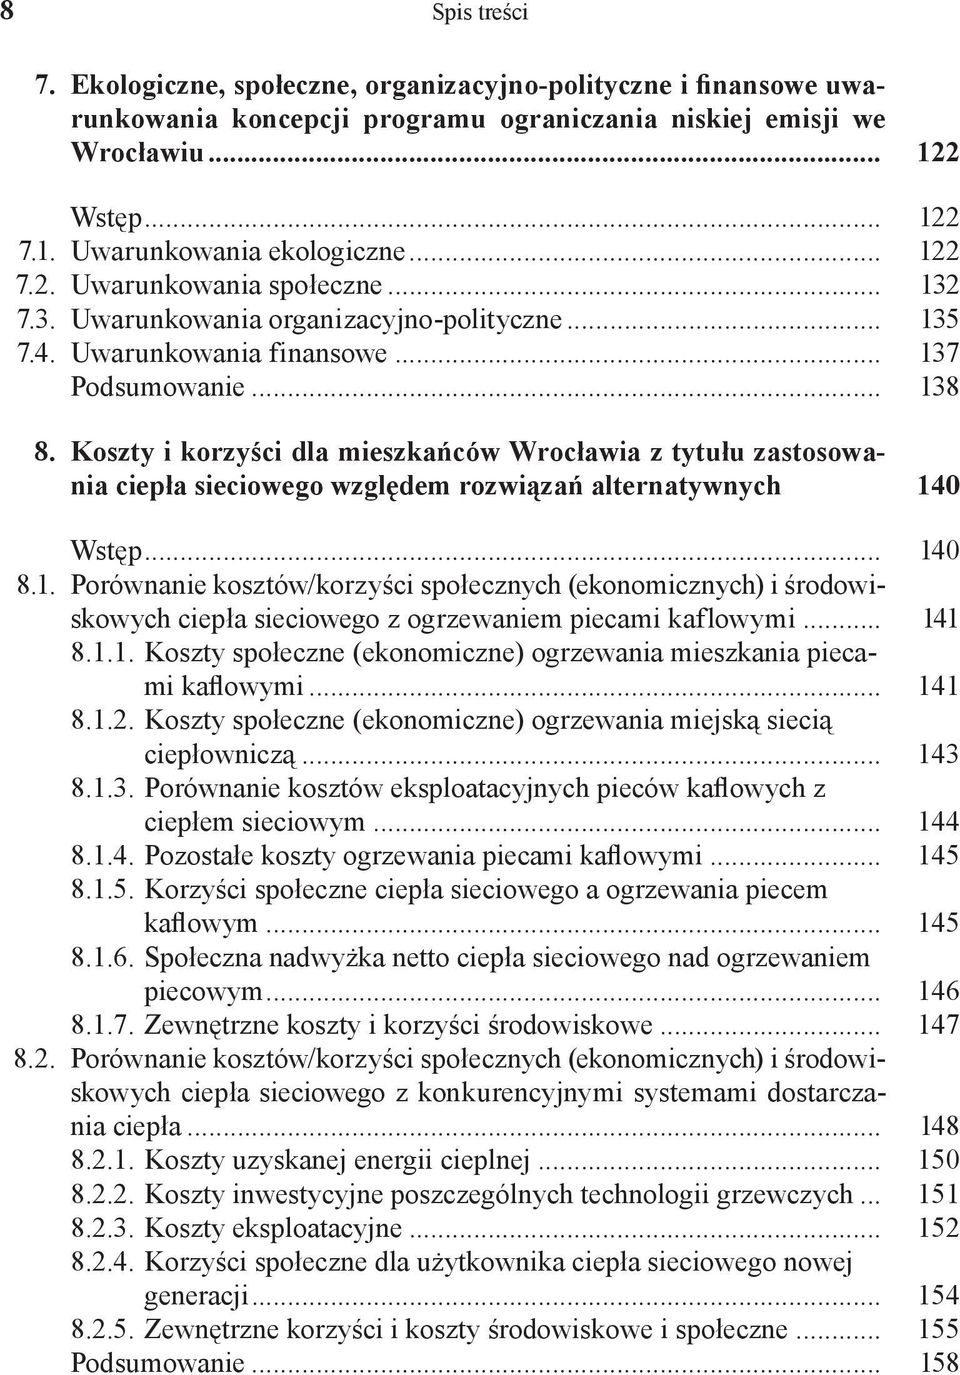 Koszty i korzyści dla mieszkańców Wrocławia z tytułu zastosowania ciepła sieciowego względem rozwiązań alternatywnych 14